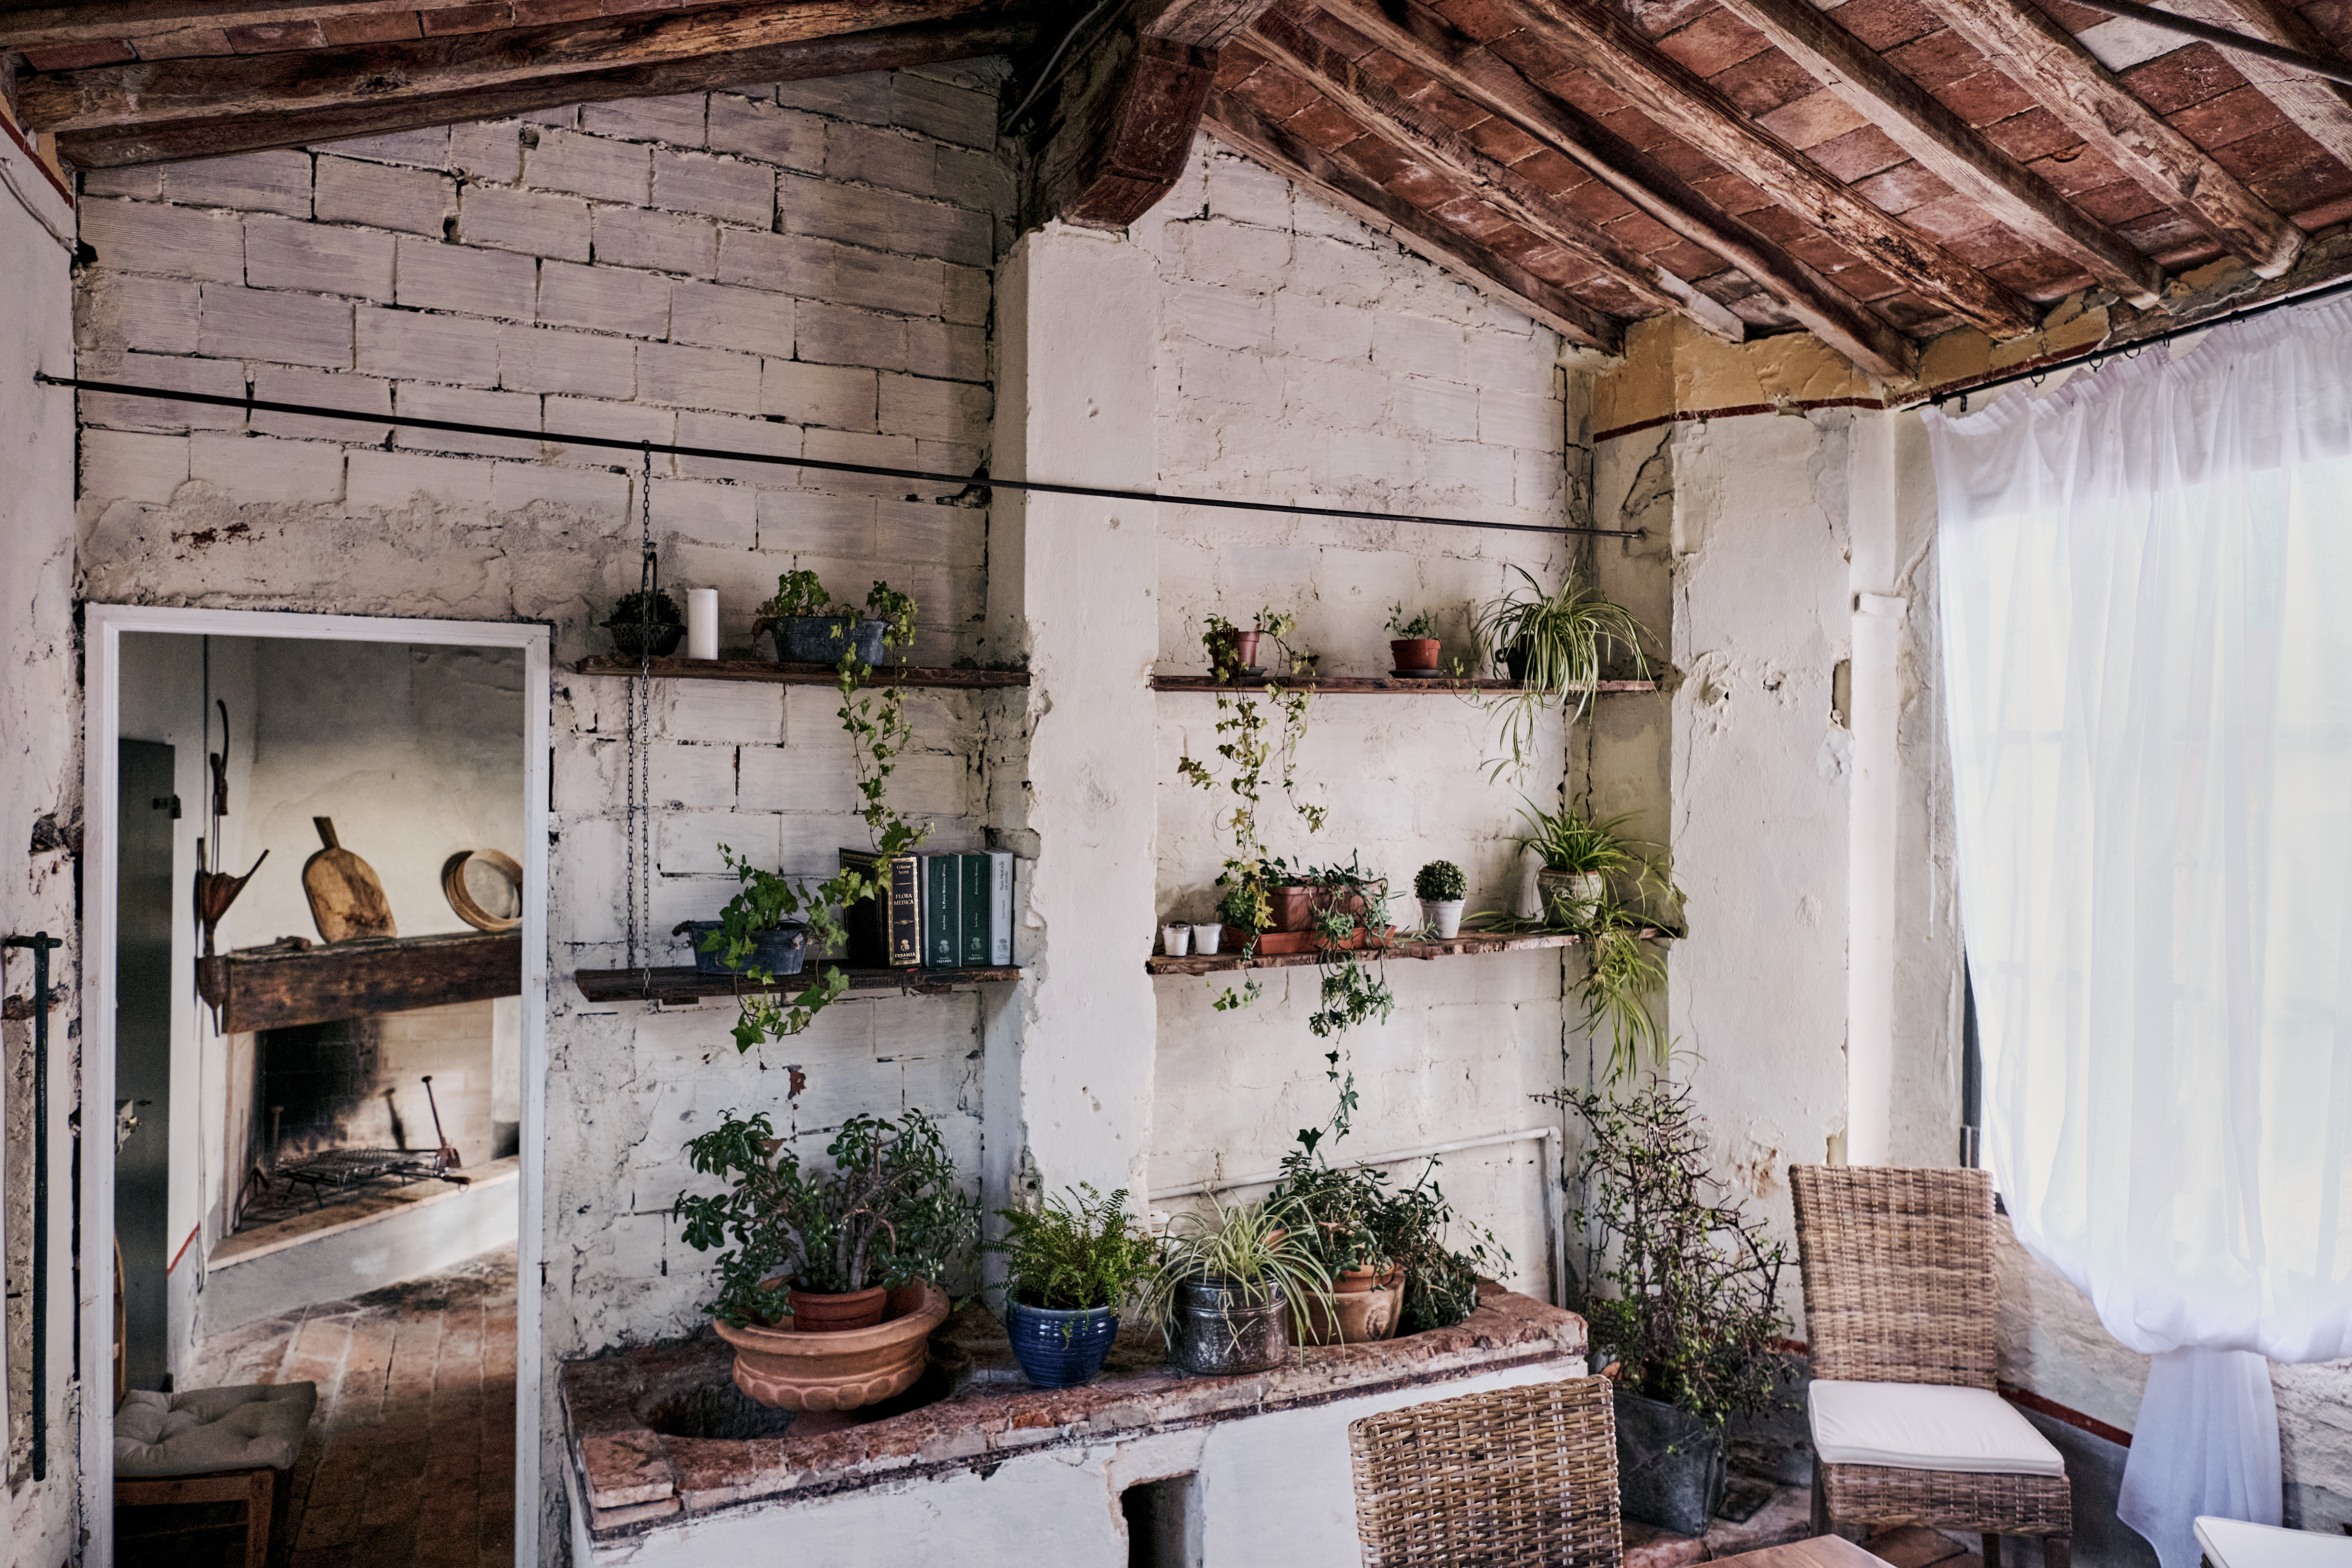 Farmhouse Brick Ideas for Your Home